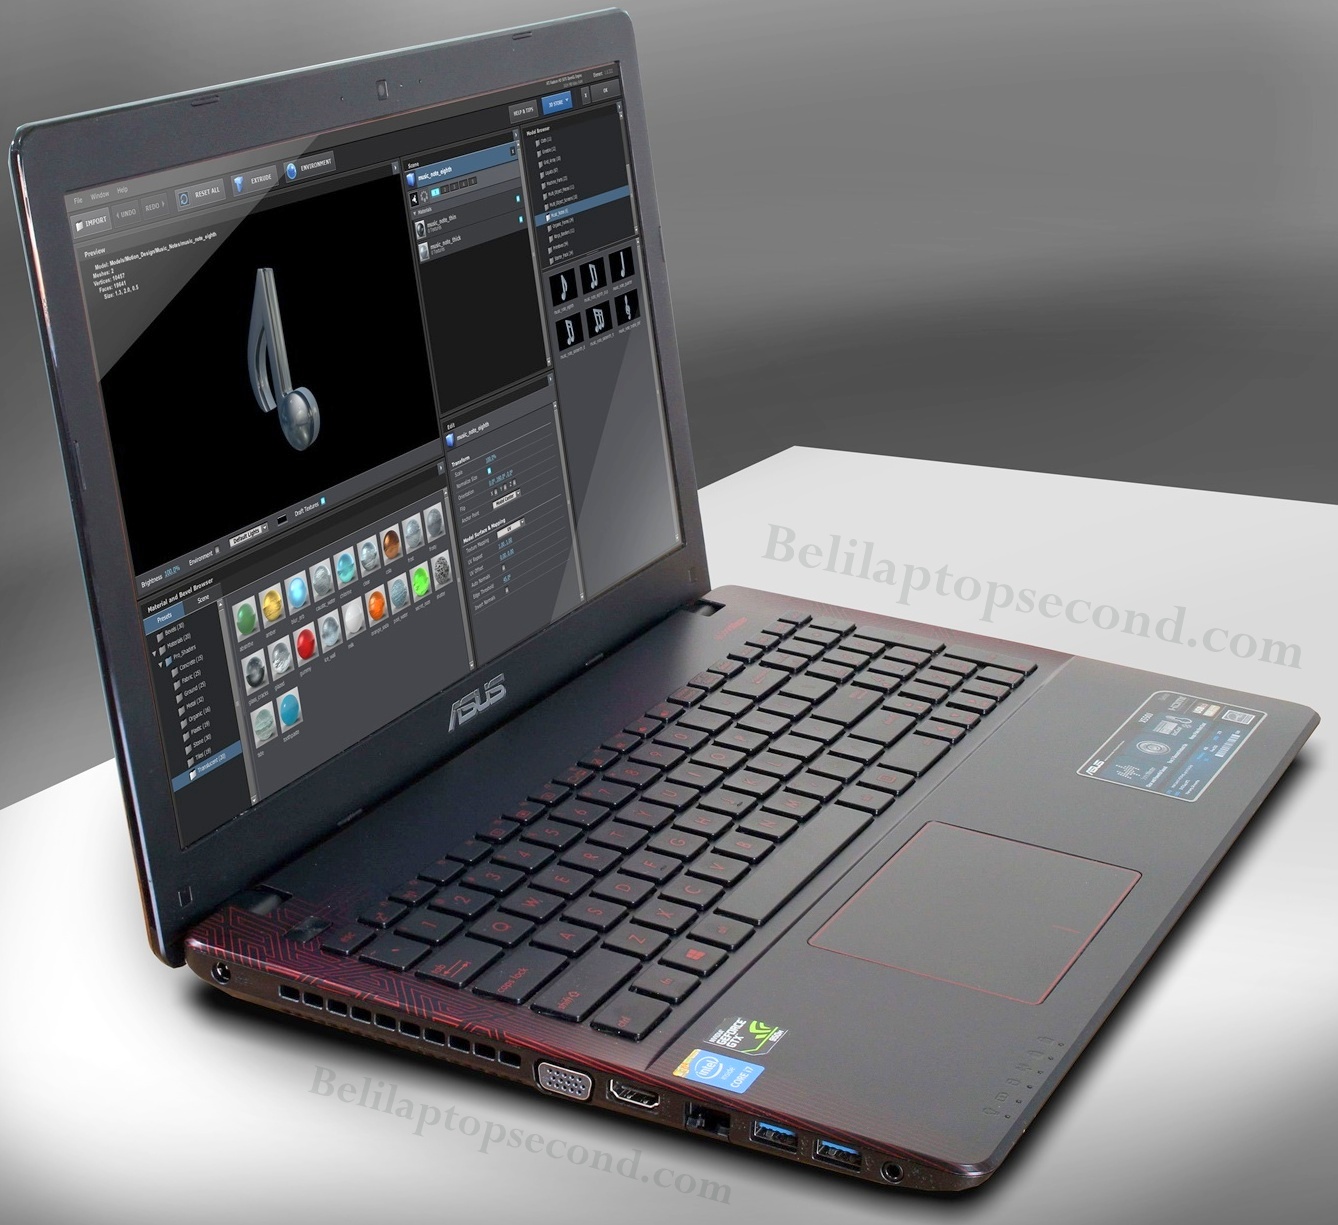 Jual Laptop Asus X550jx Xx031d Core I7 Gaming Jual Beli Laptop Kamera Bekas Service Sparepart Di Malang